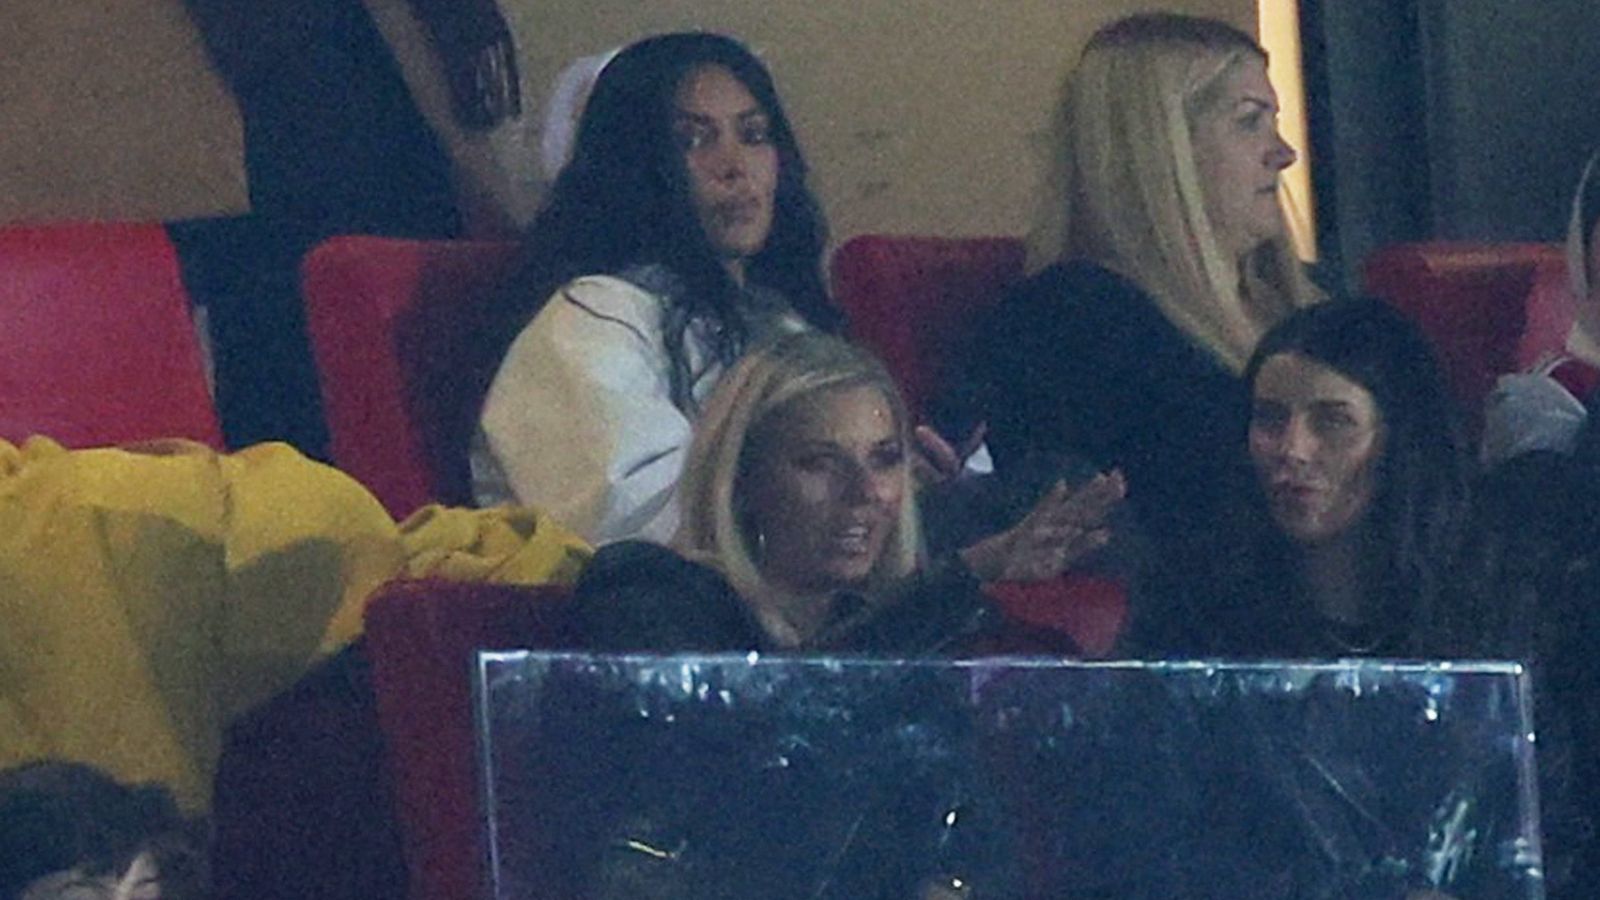 Kim Kardashian erscheint überraschend in London beim Arsenal-Fußballspiel |  Ents & Arts News